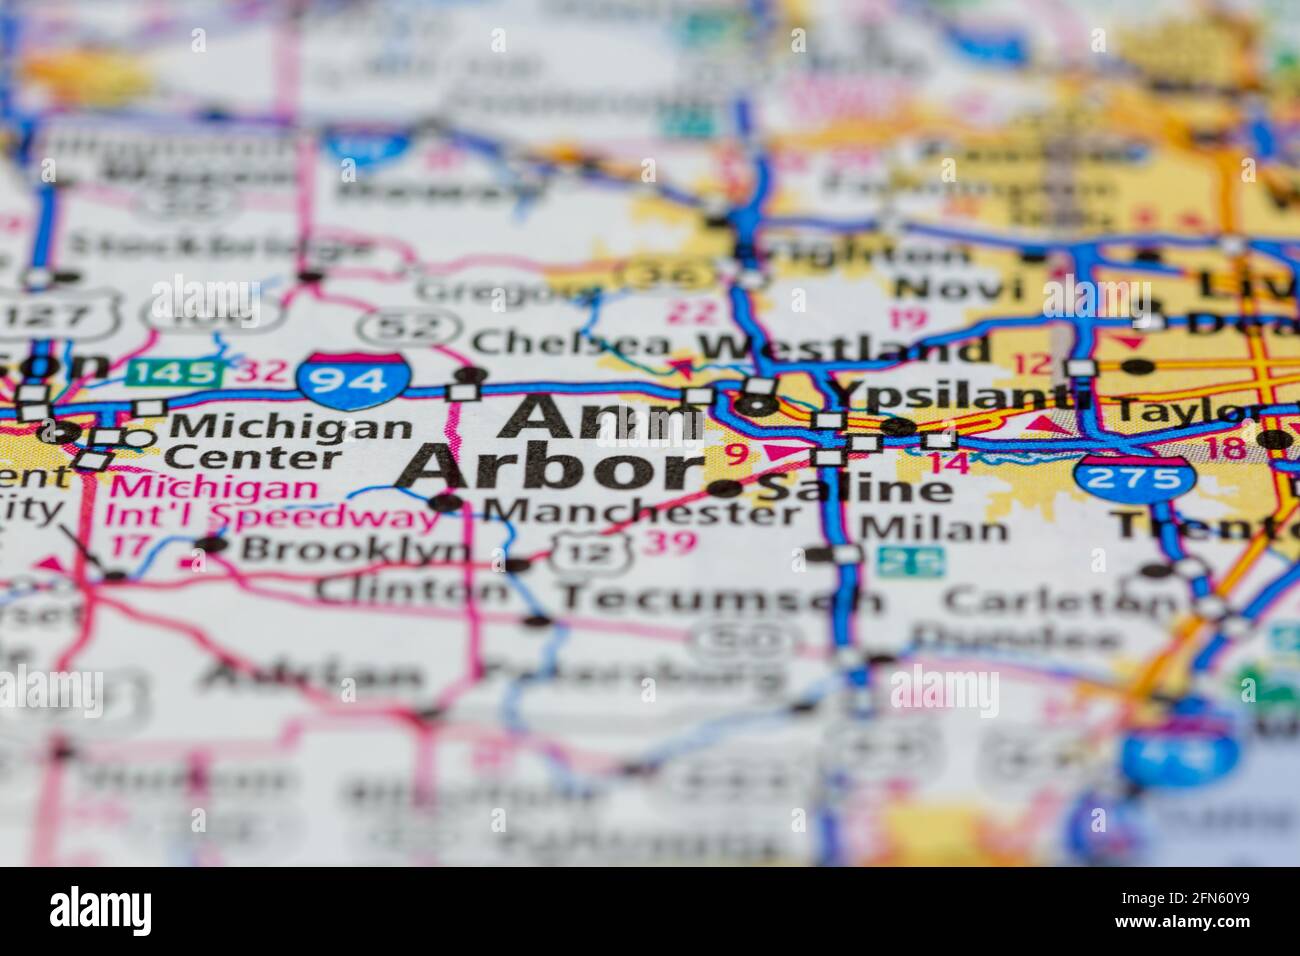 Ann Arbor Michigan USA montré sur une carte de géographie ou carte routière Banque D'Images